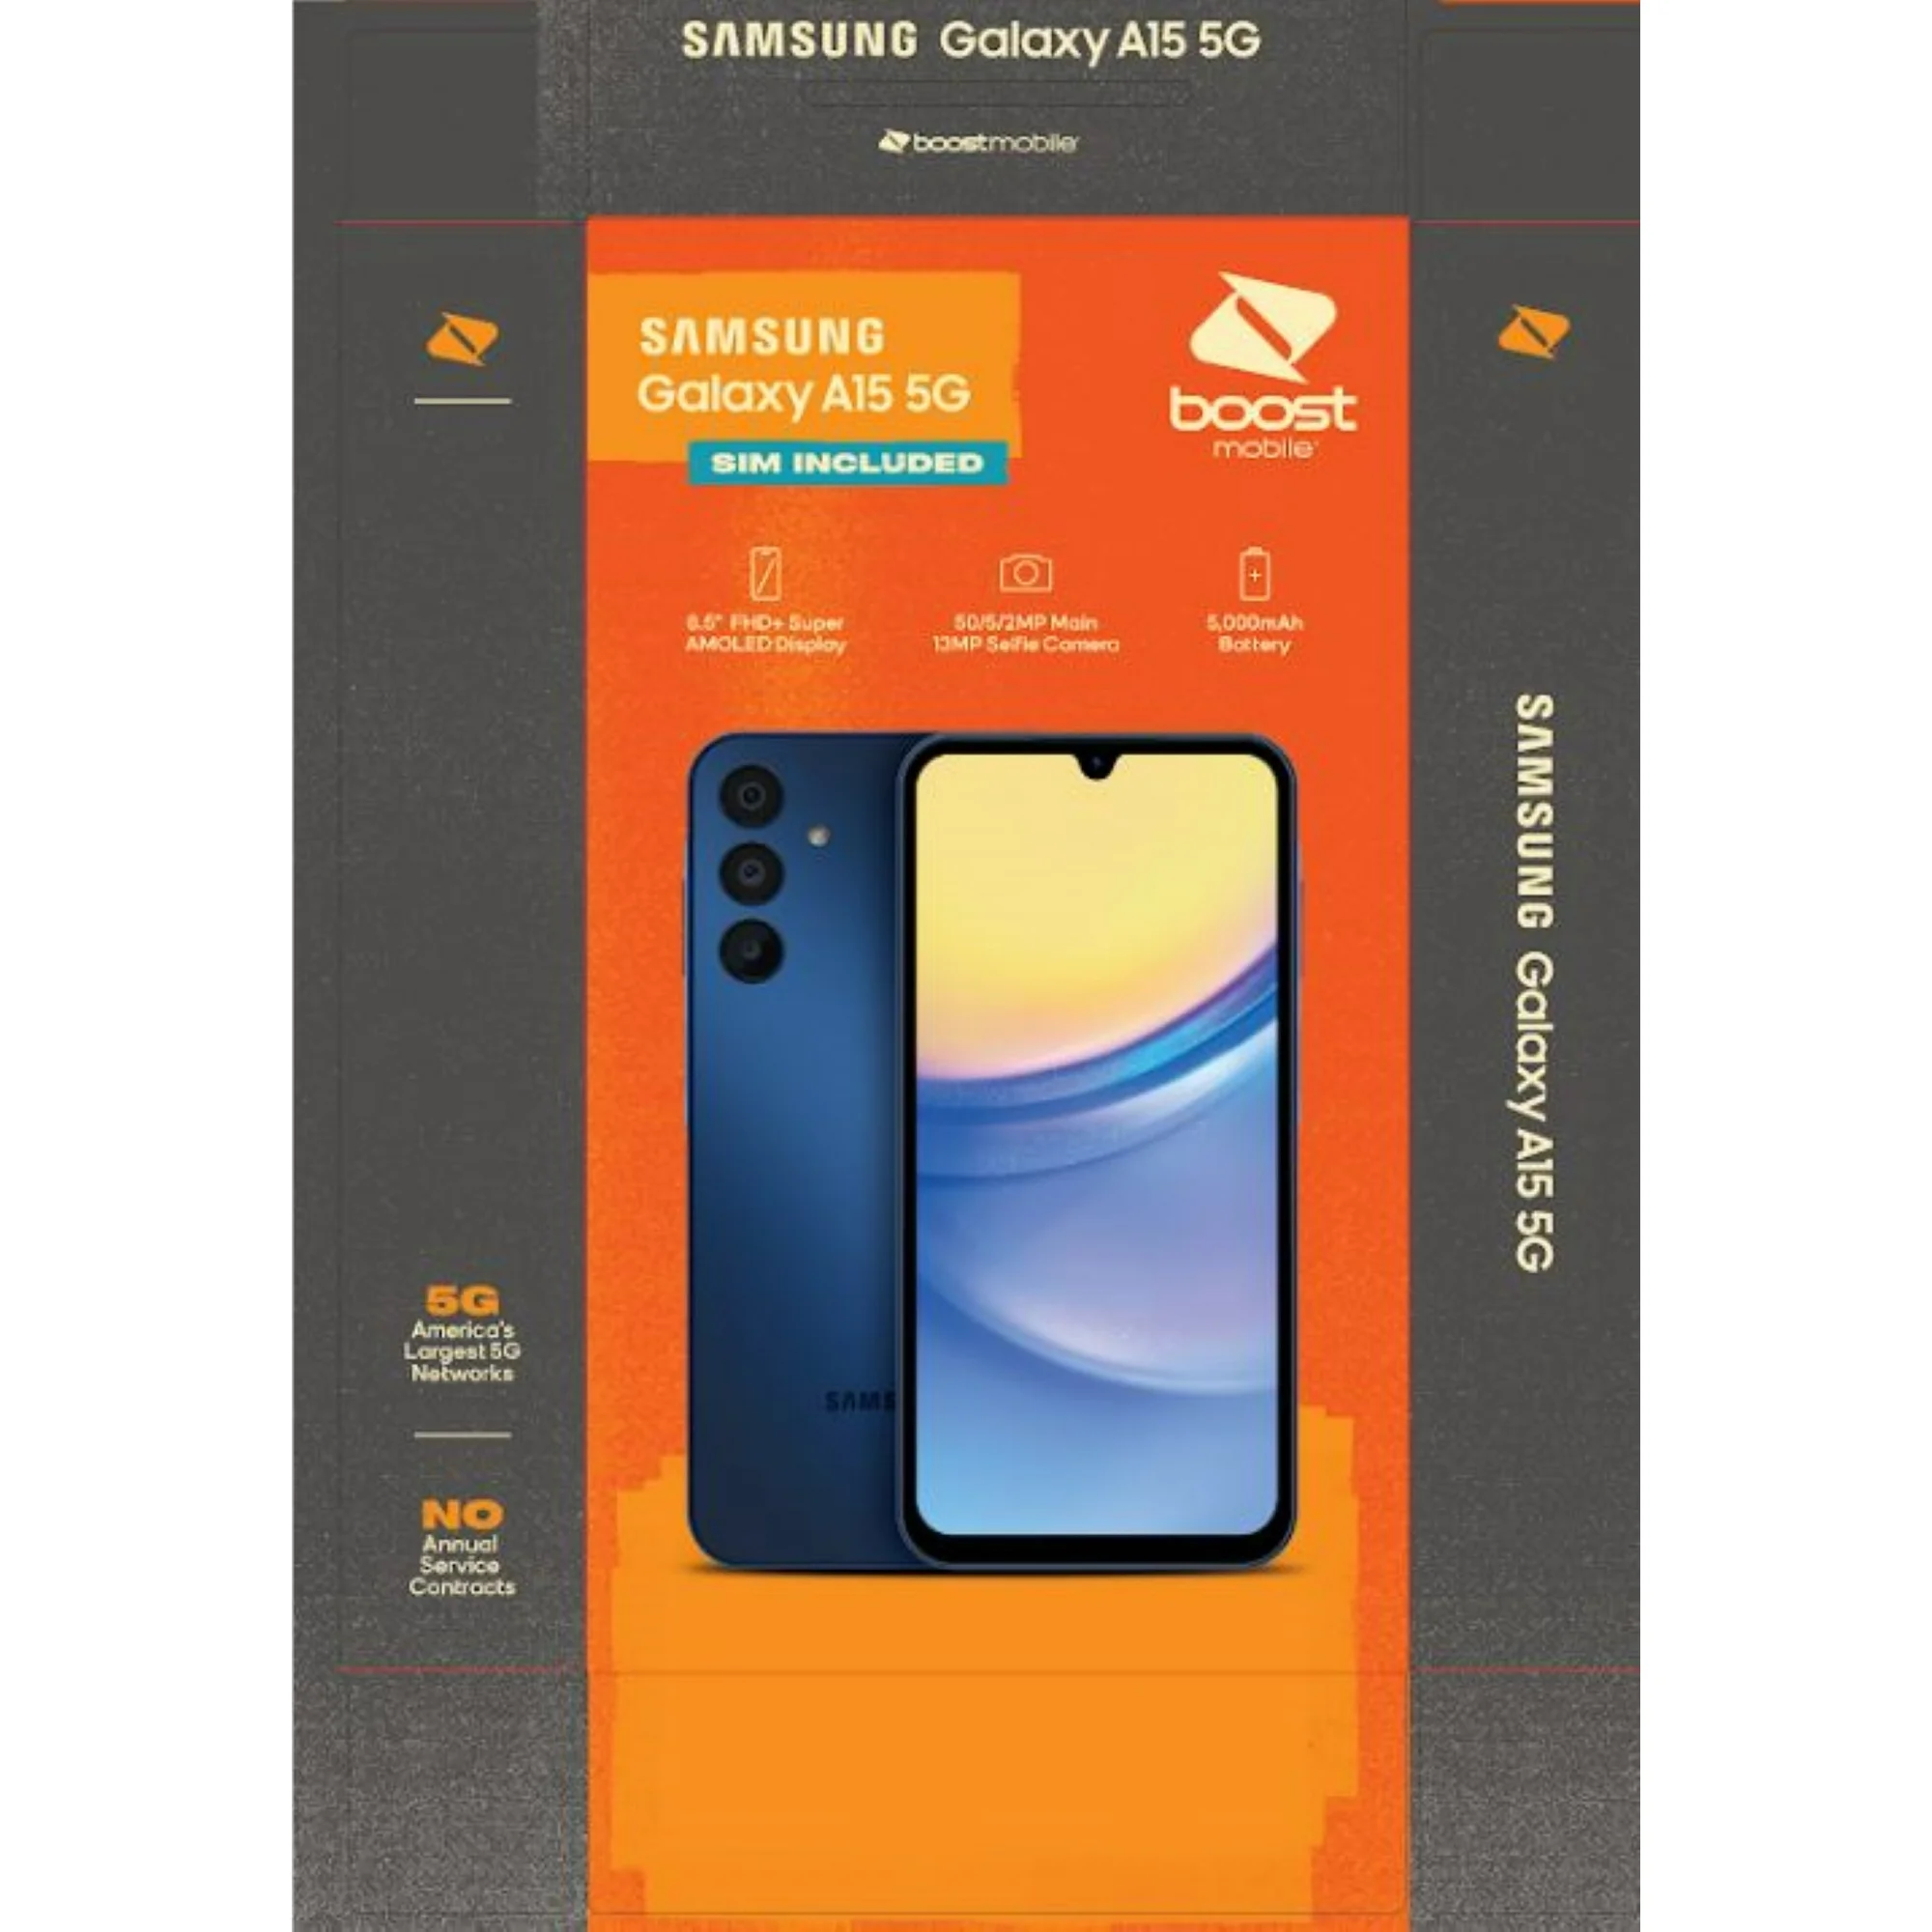 升級配置 SuperAMOLED 螢幕：Samsung Galaxy A15 5G 未發布先開賣；規格與售價全曝光！ 2